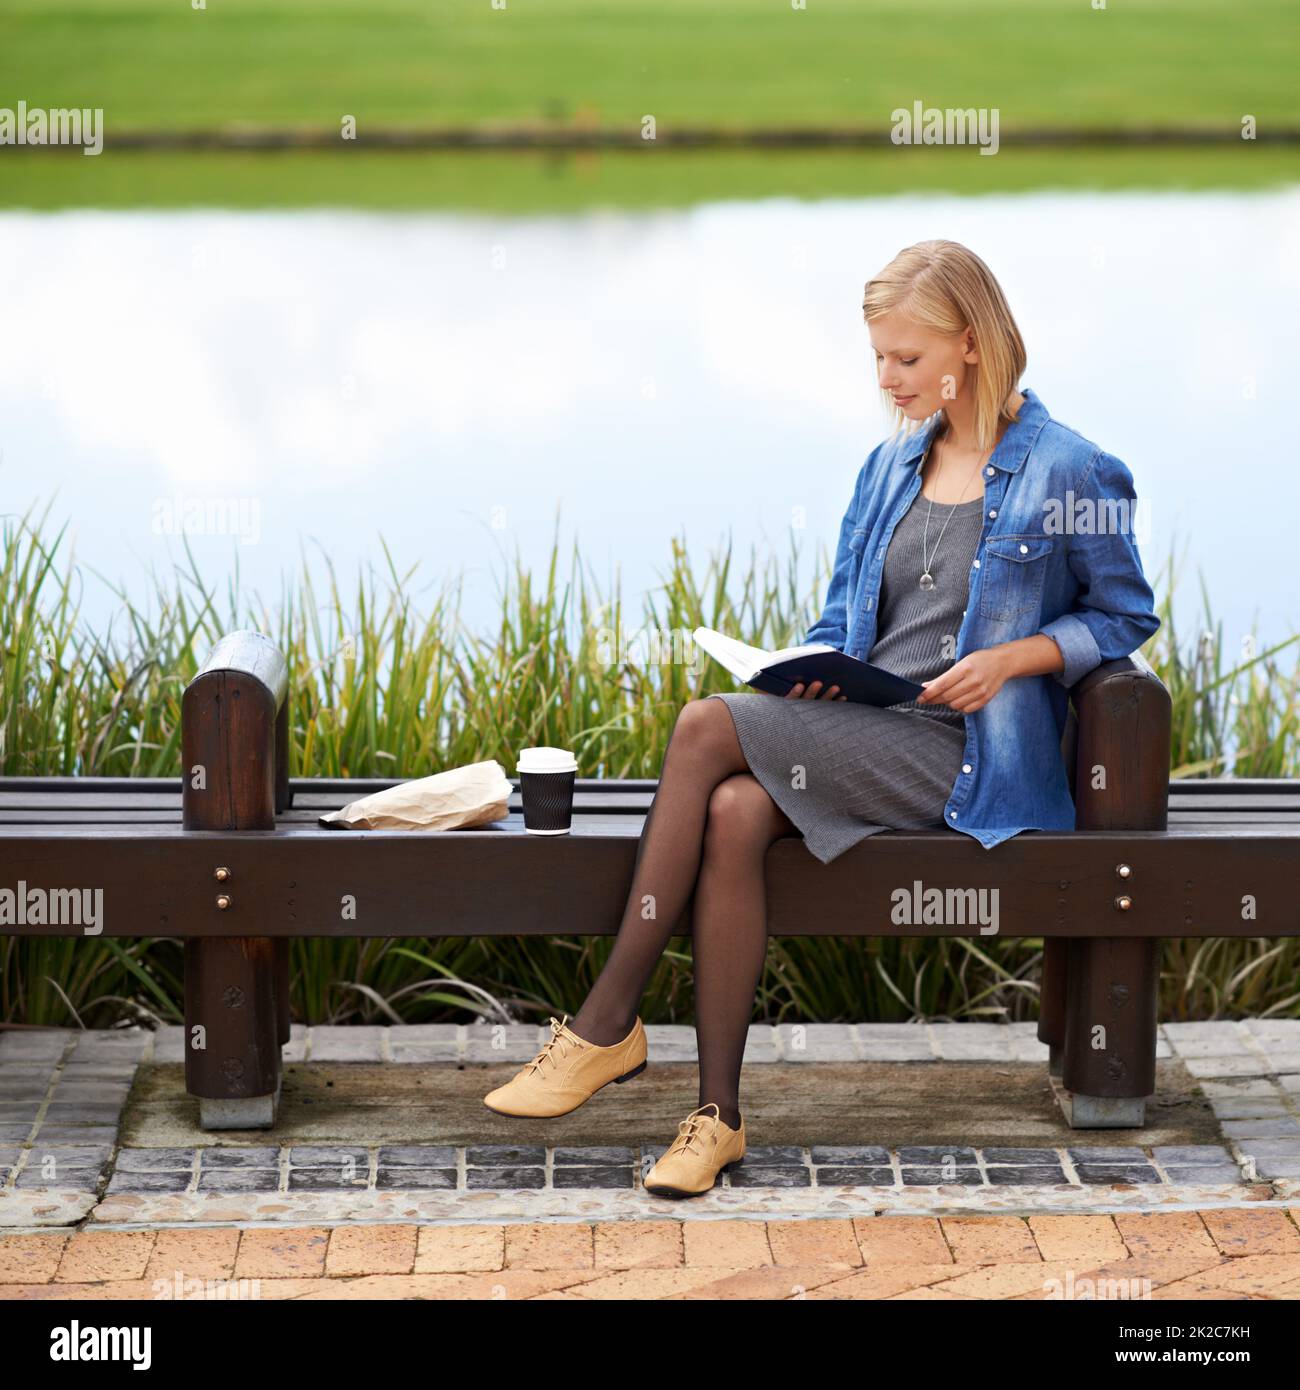 Profitez d'un moment de repos dans le parc. Photo d'une jolie femme blonde lisant un livre pendant sa pause déjeuner sur un banc de parc. Banque D'Images